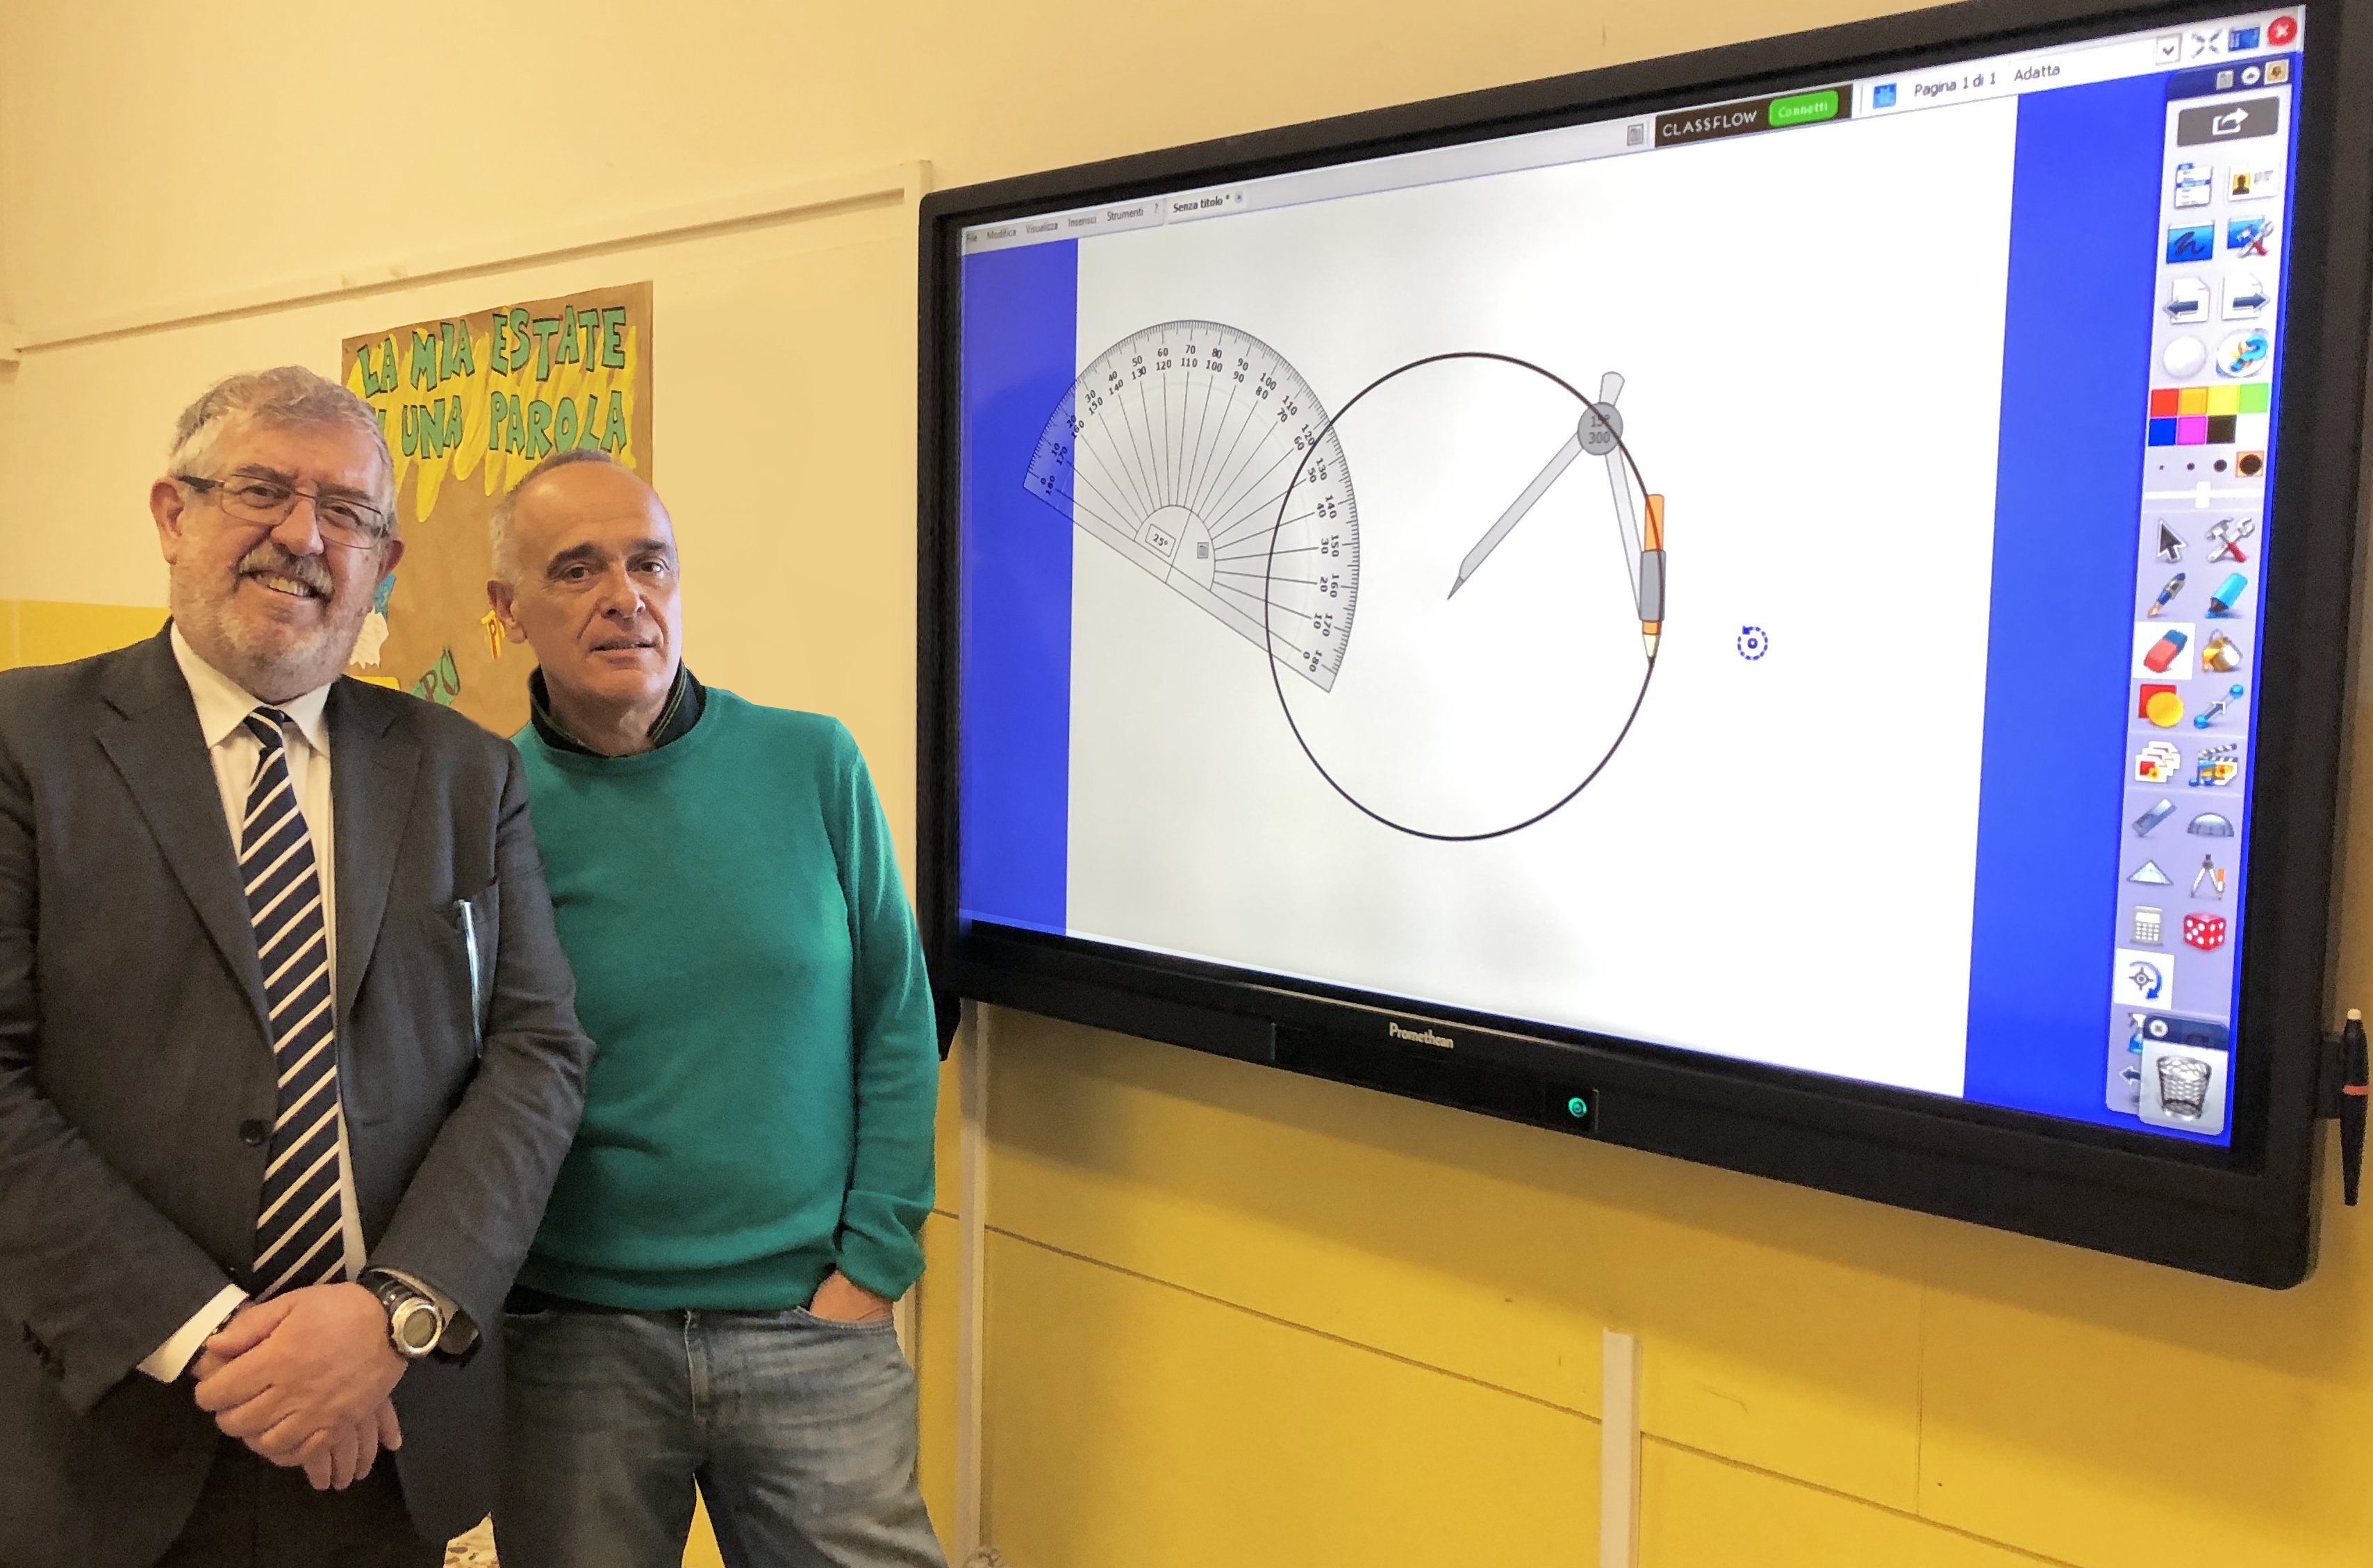 A Valenza e San Salvatore monitor touch screen rendono obsolete le Lim